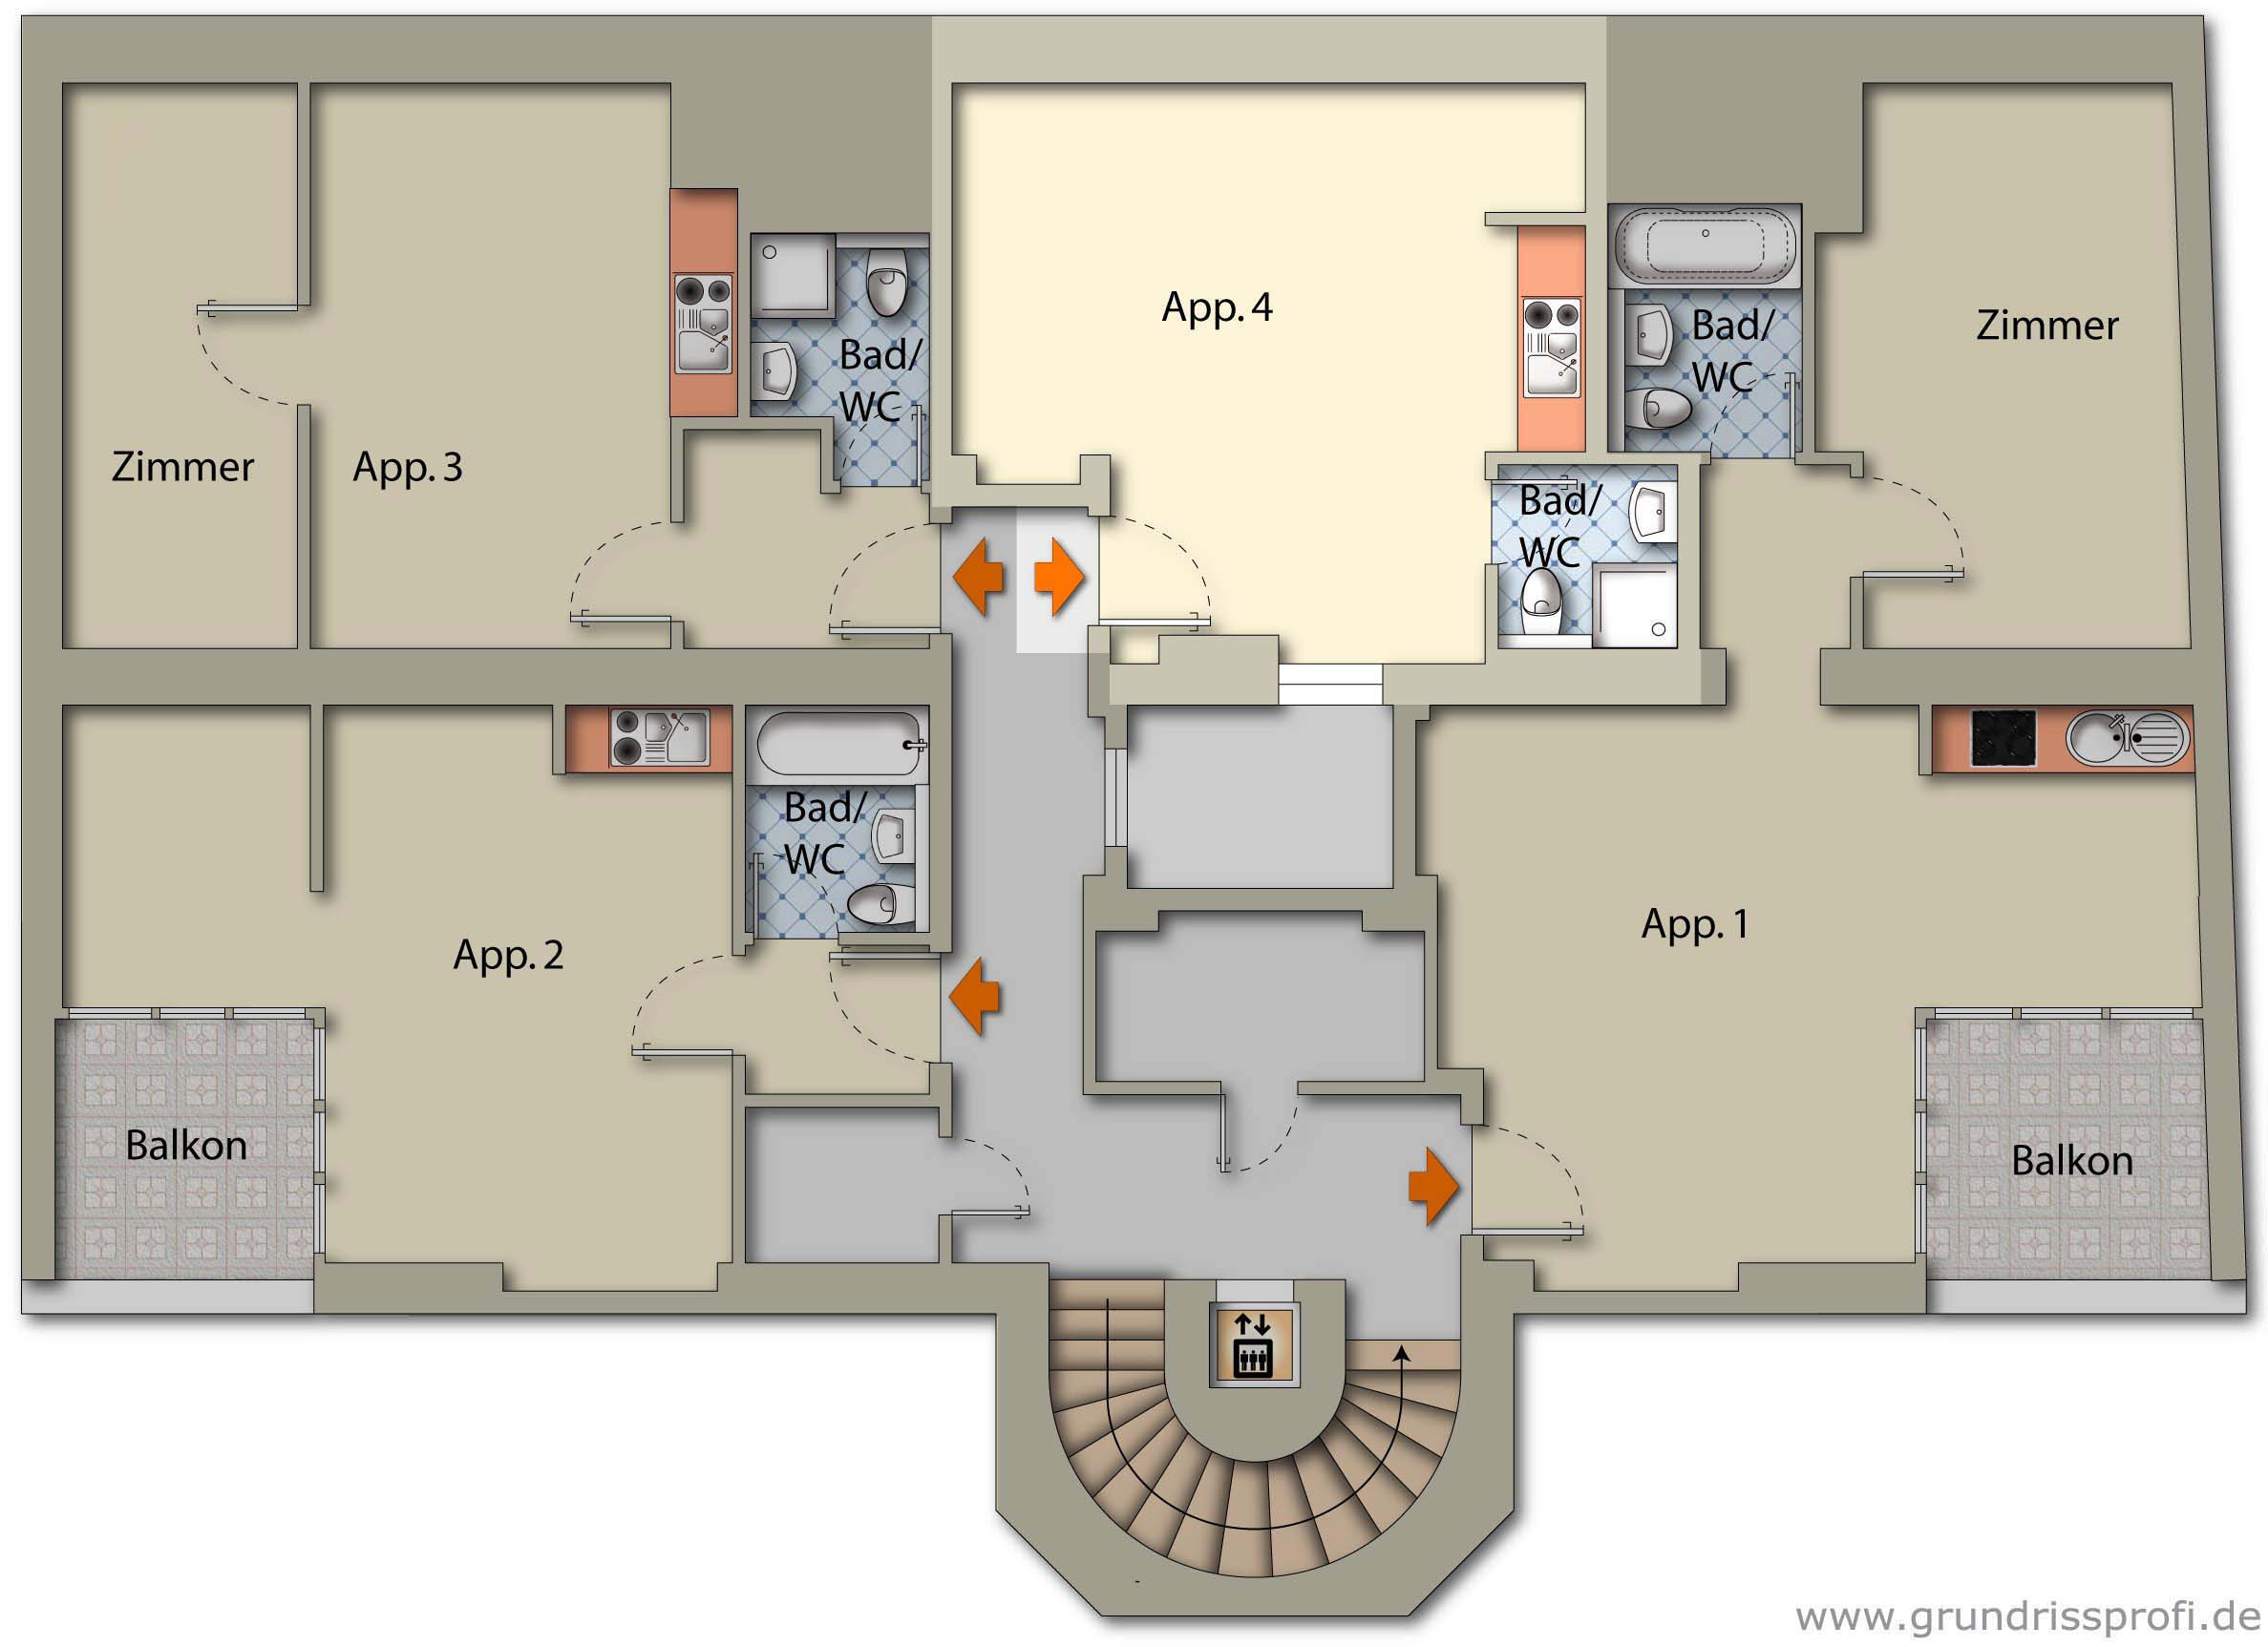 Apartment 4 Ground plan floor